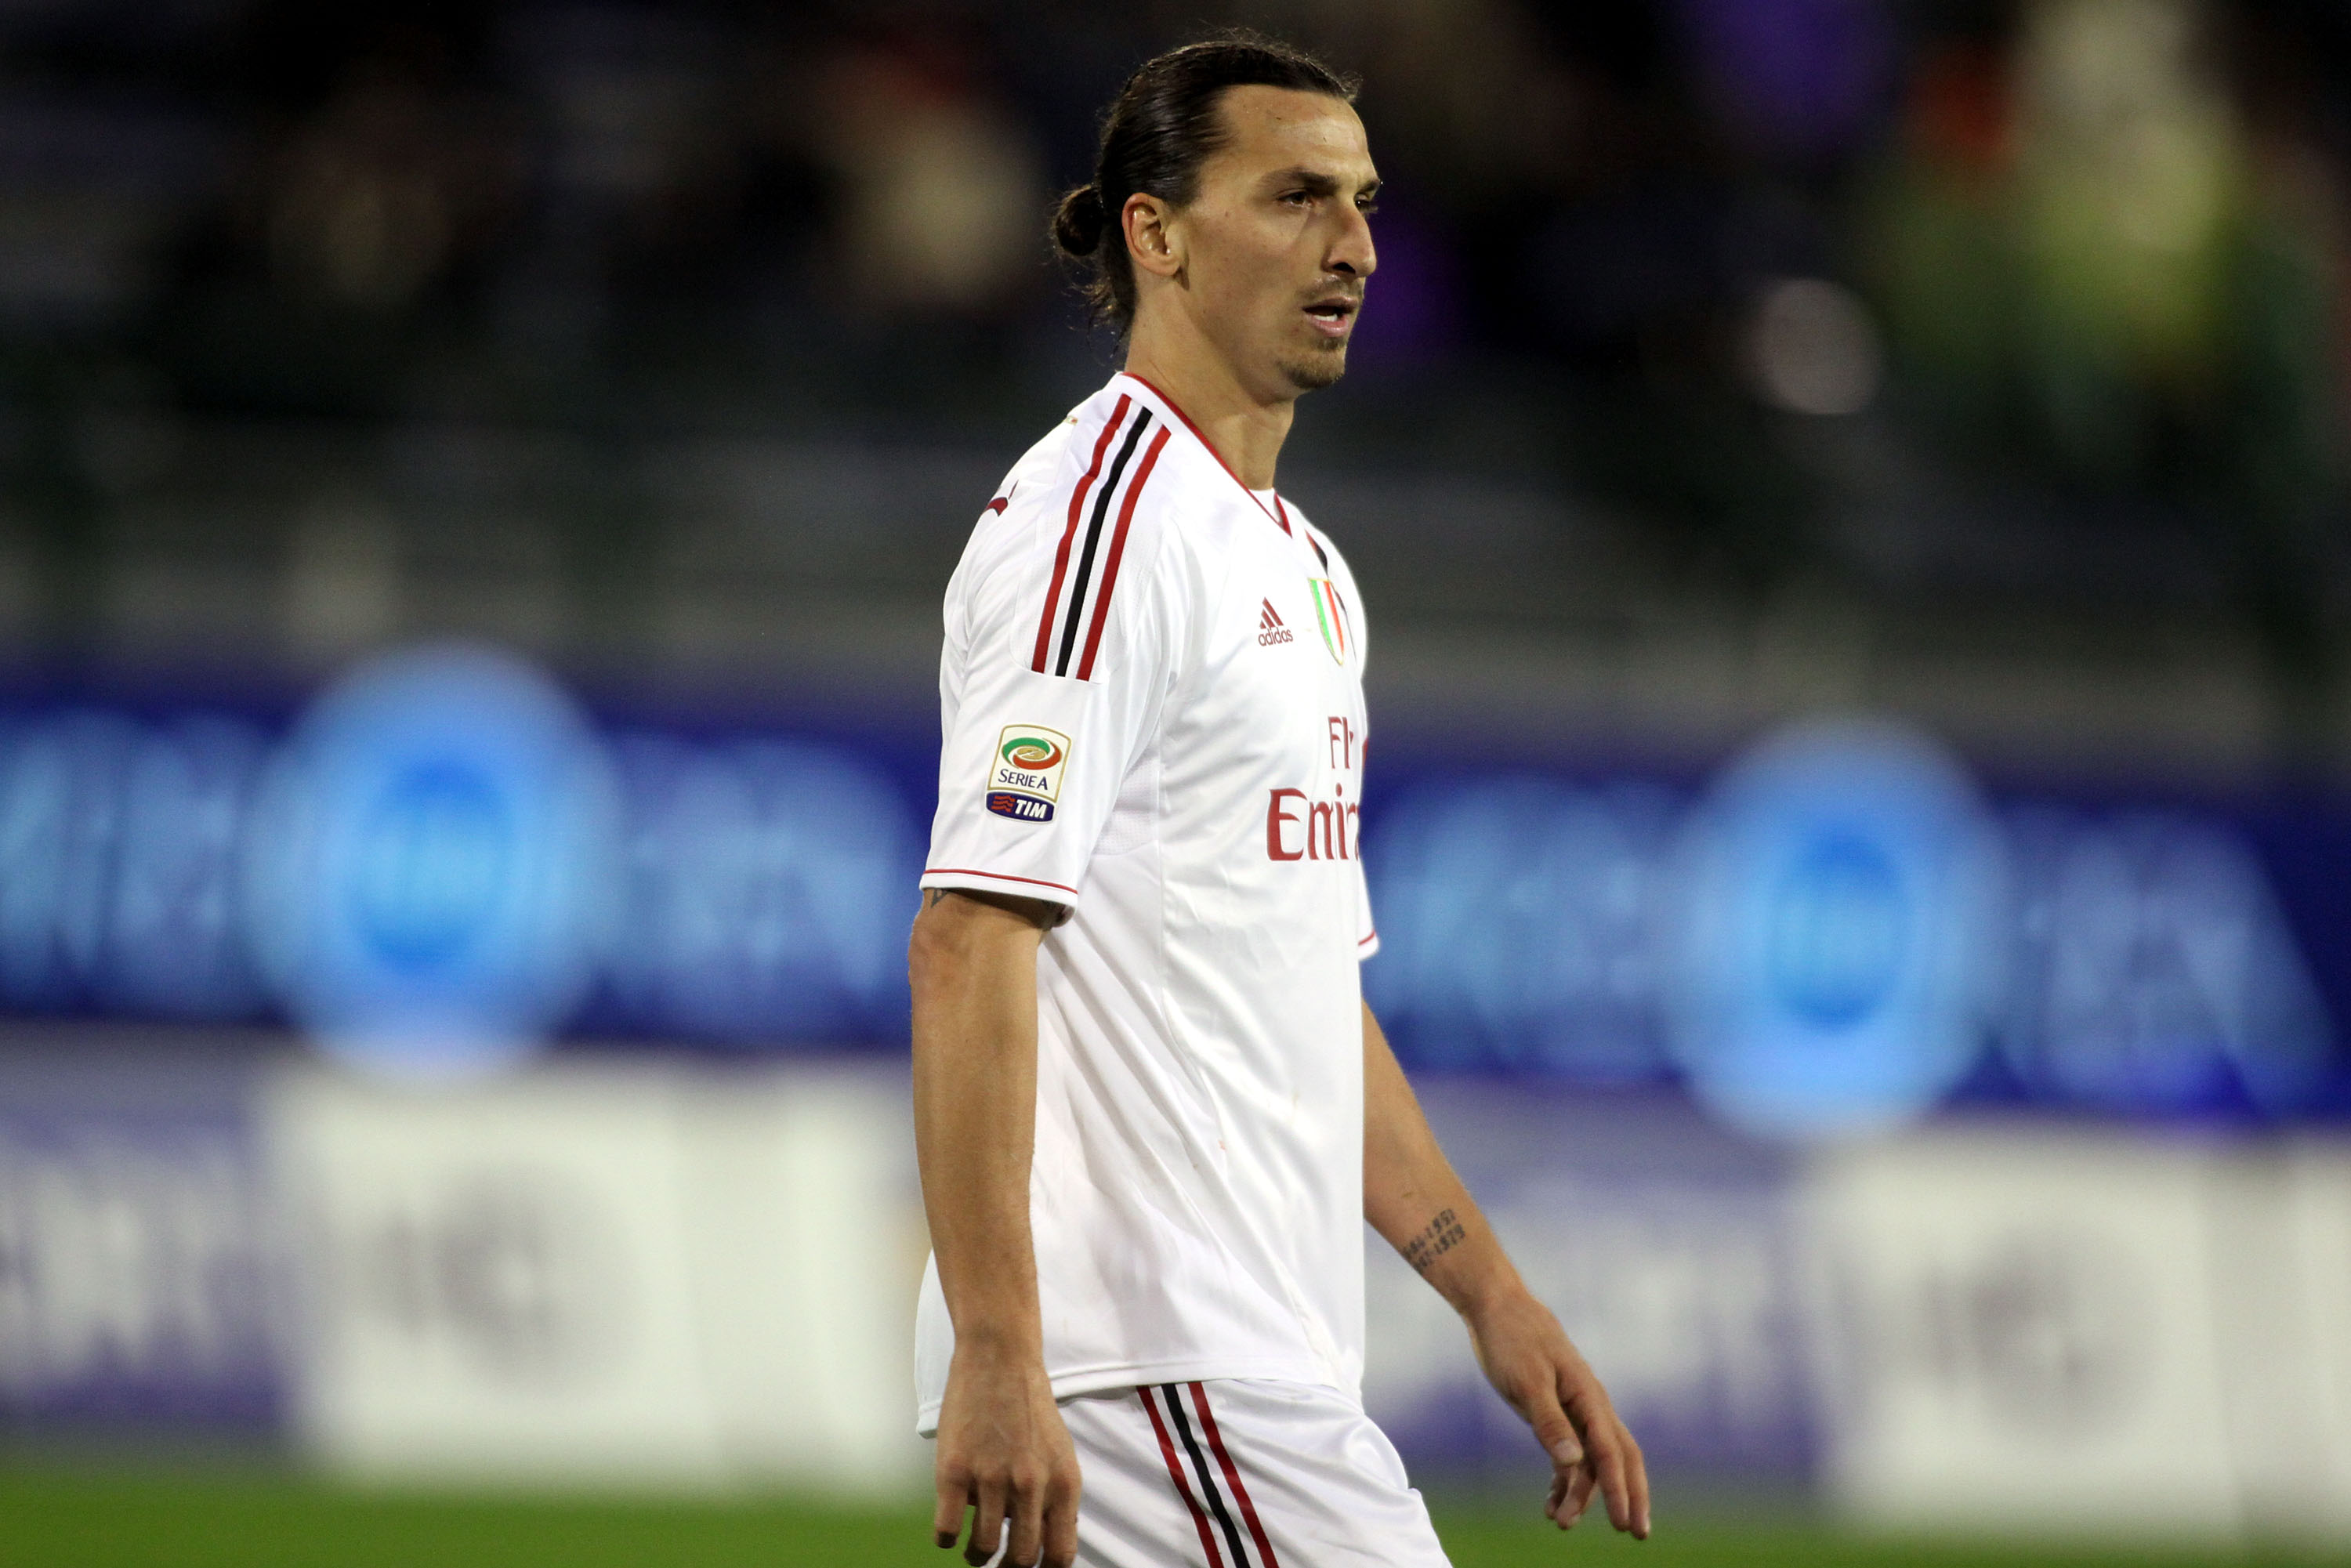 Innan Milan gick på jullov mötte de Cagliari borta. Zlatan stod för 0-2-målet som också blev slutresultatet.